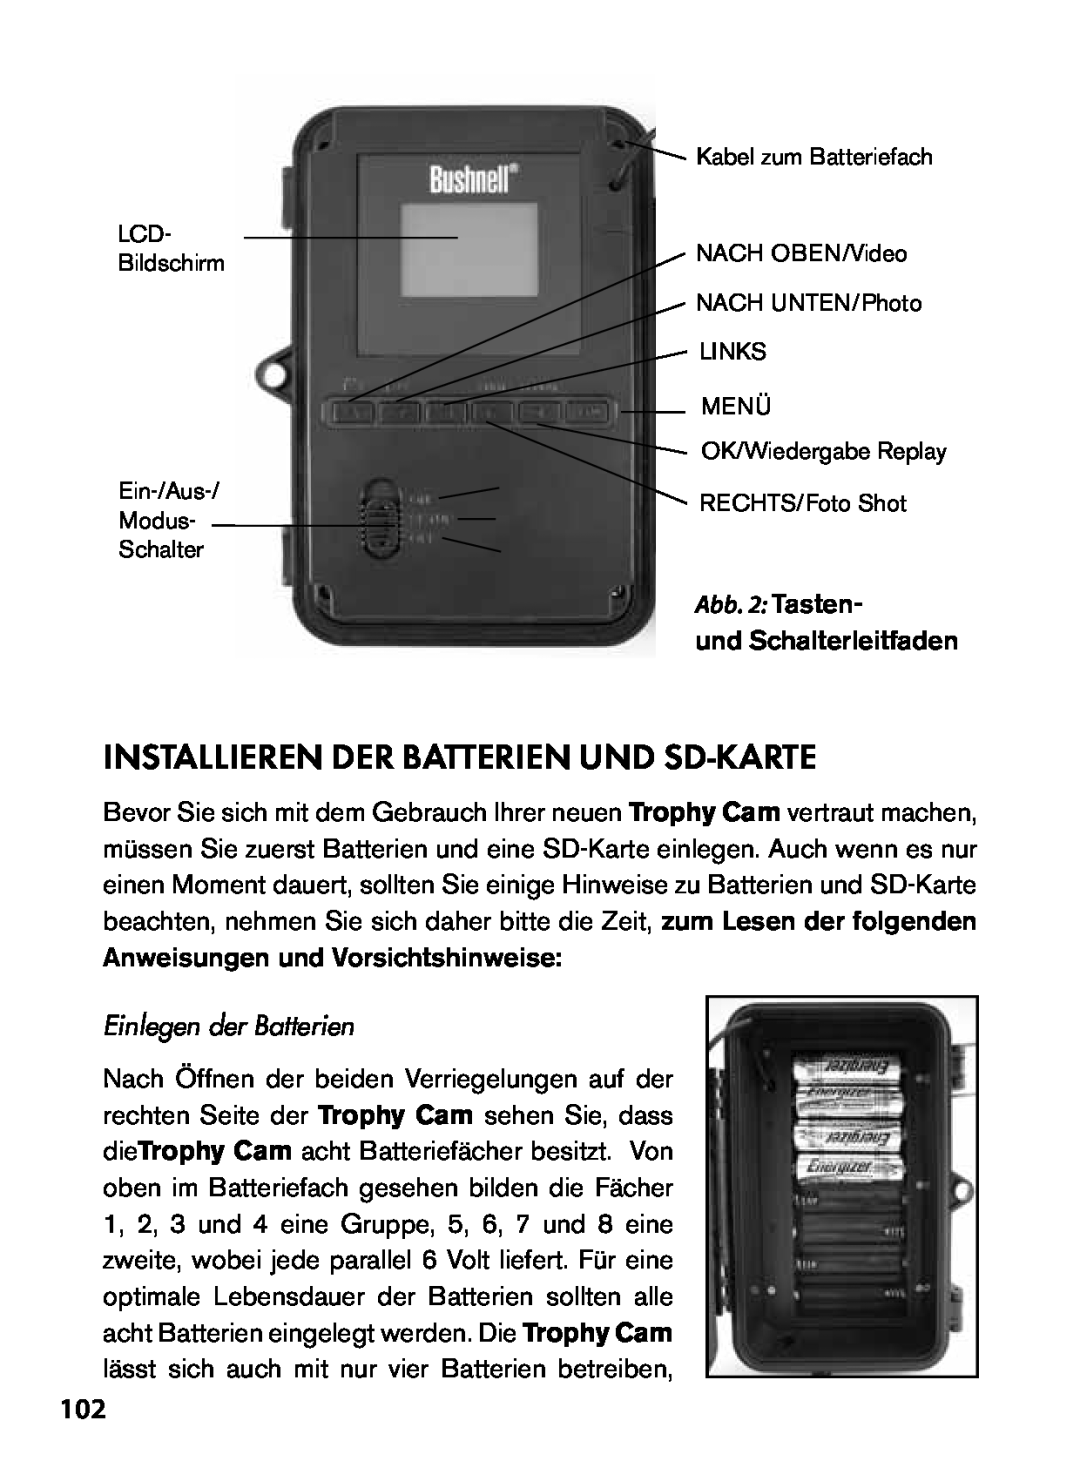 Bushnell 119455, 119445, 119435 Installieren Der Batterien Und Sd-Karte, Einlegen der Batterien, Abb. 2 Tasten 